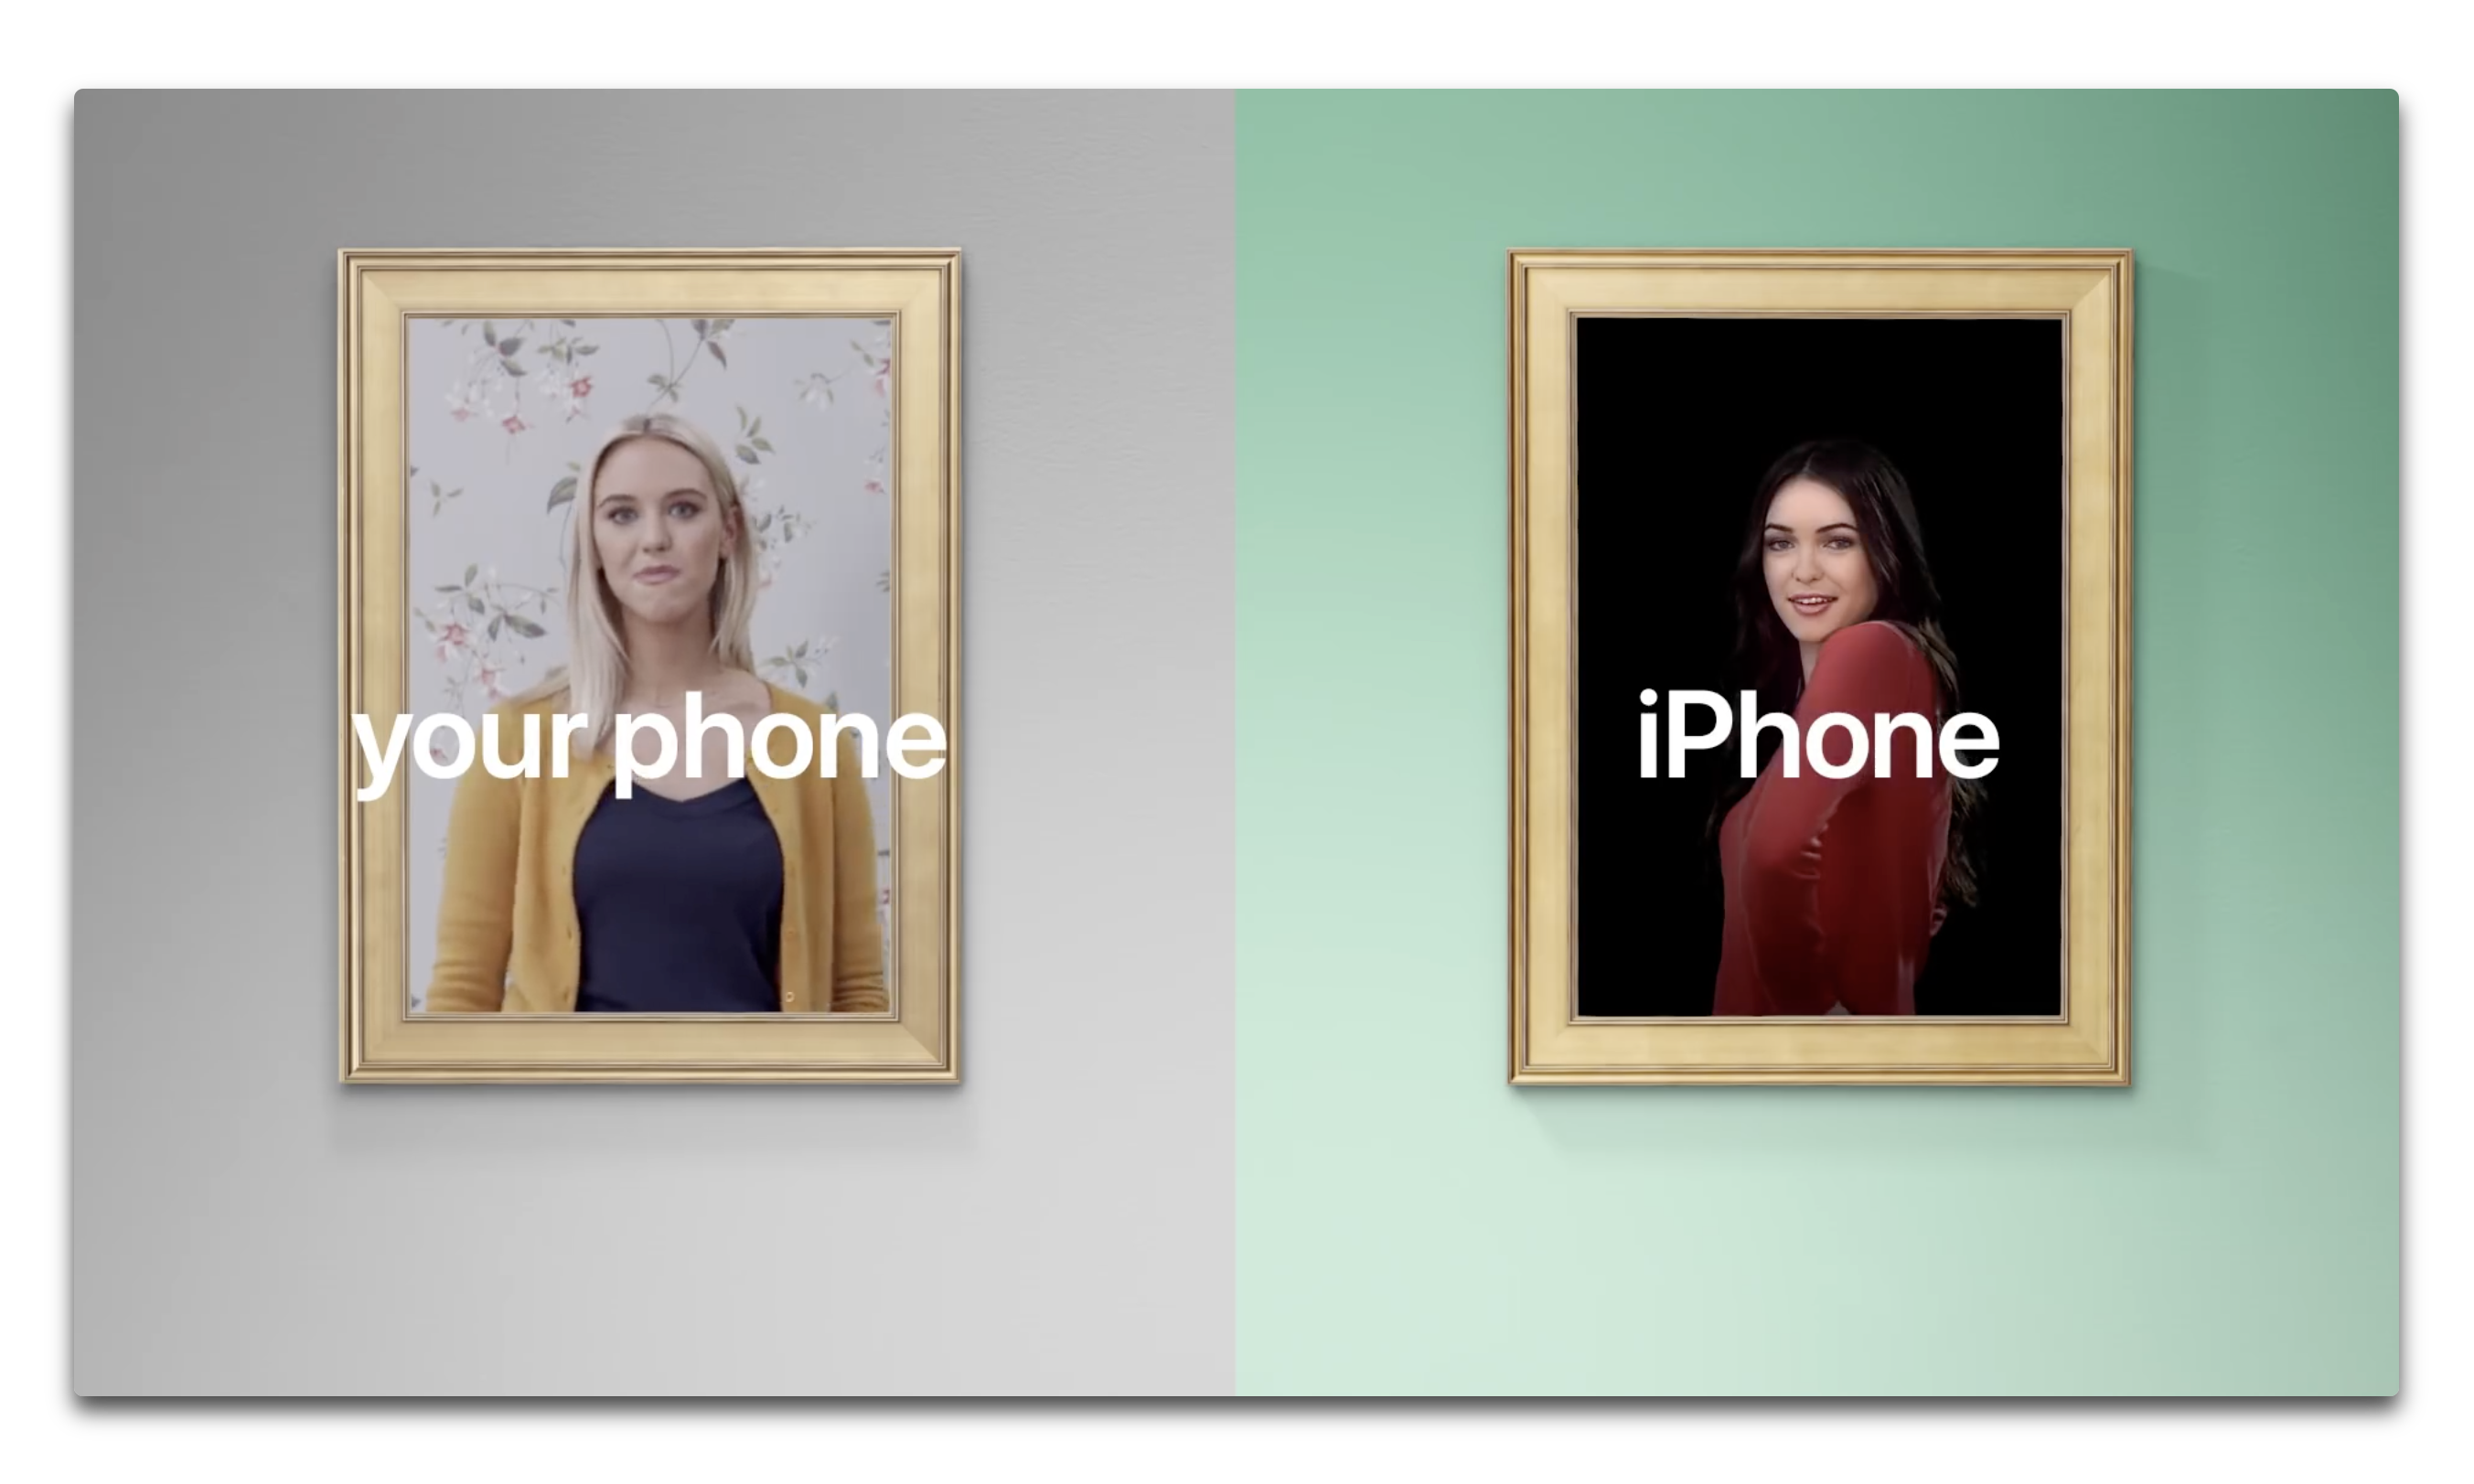 【iOS】フォトエディタ「Snapseed」がバージョンアップでiPhone X をサポート